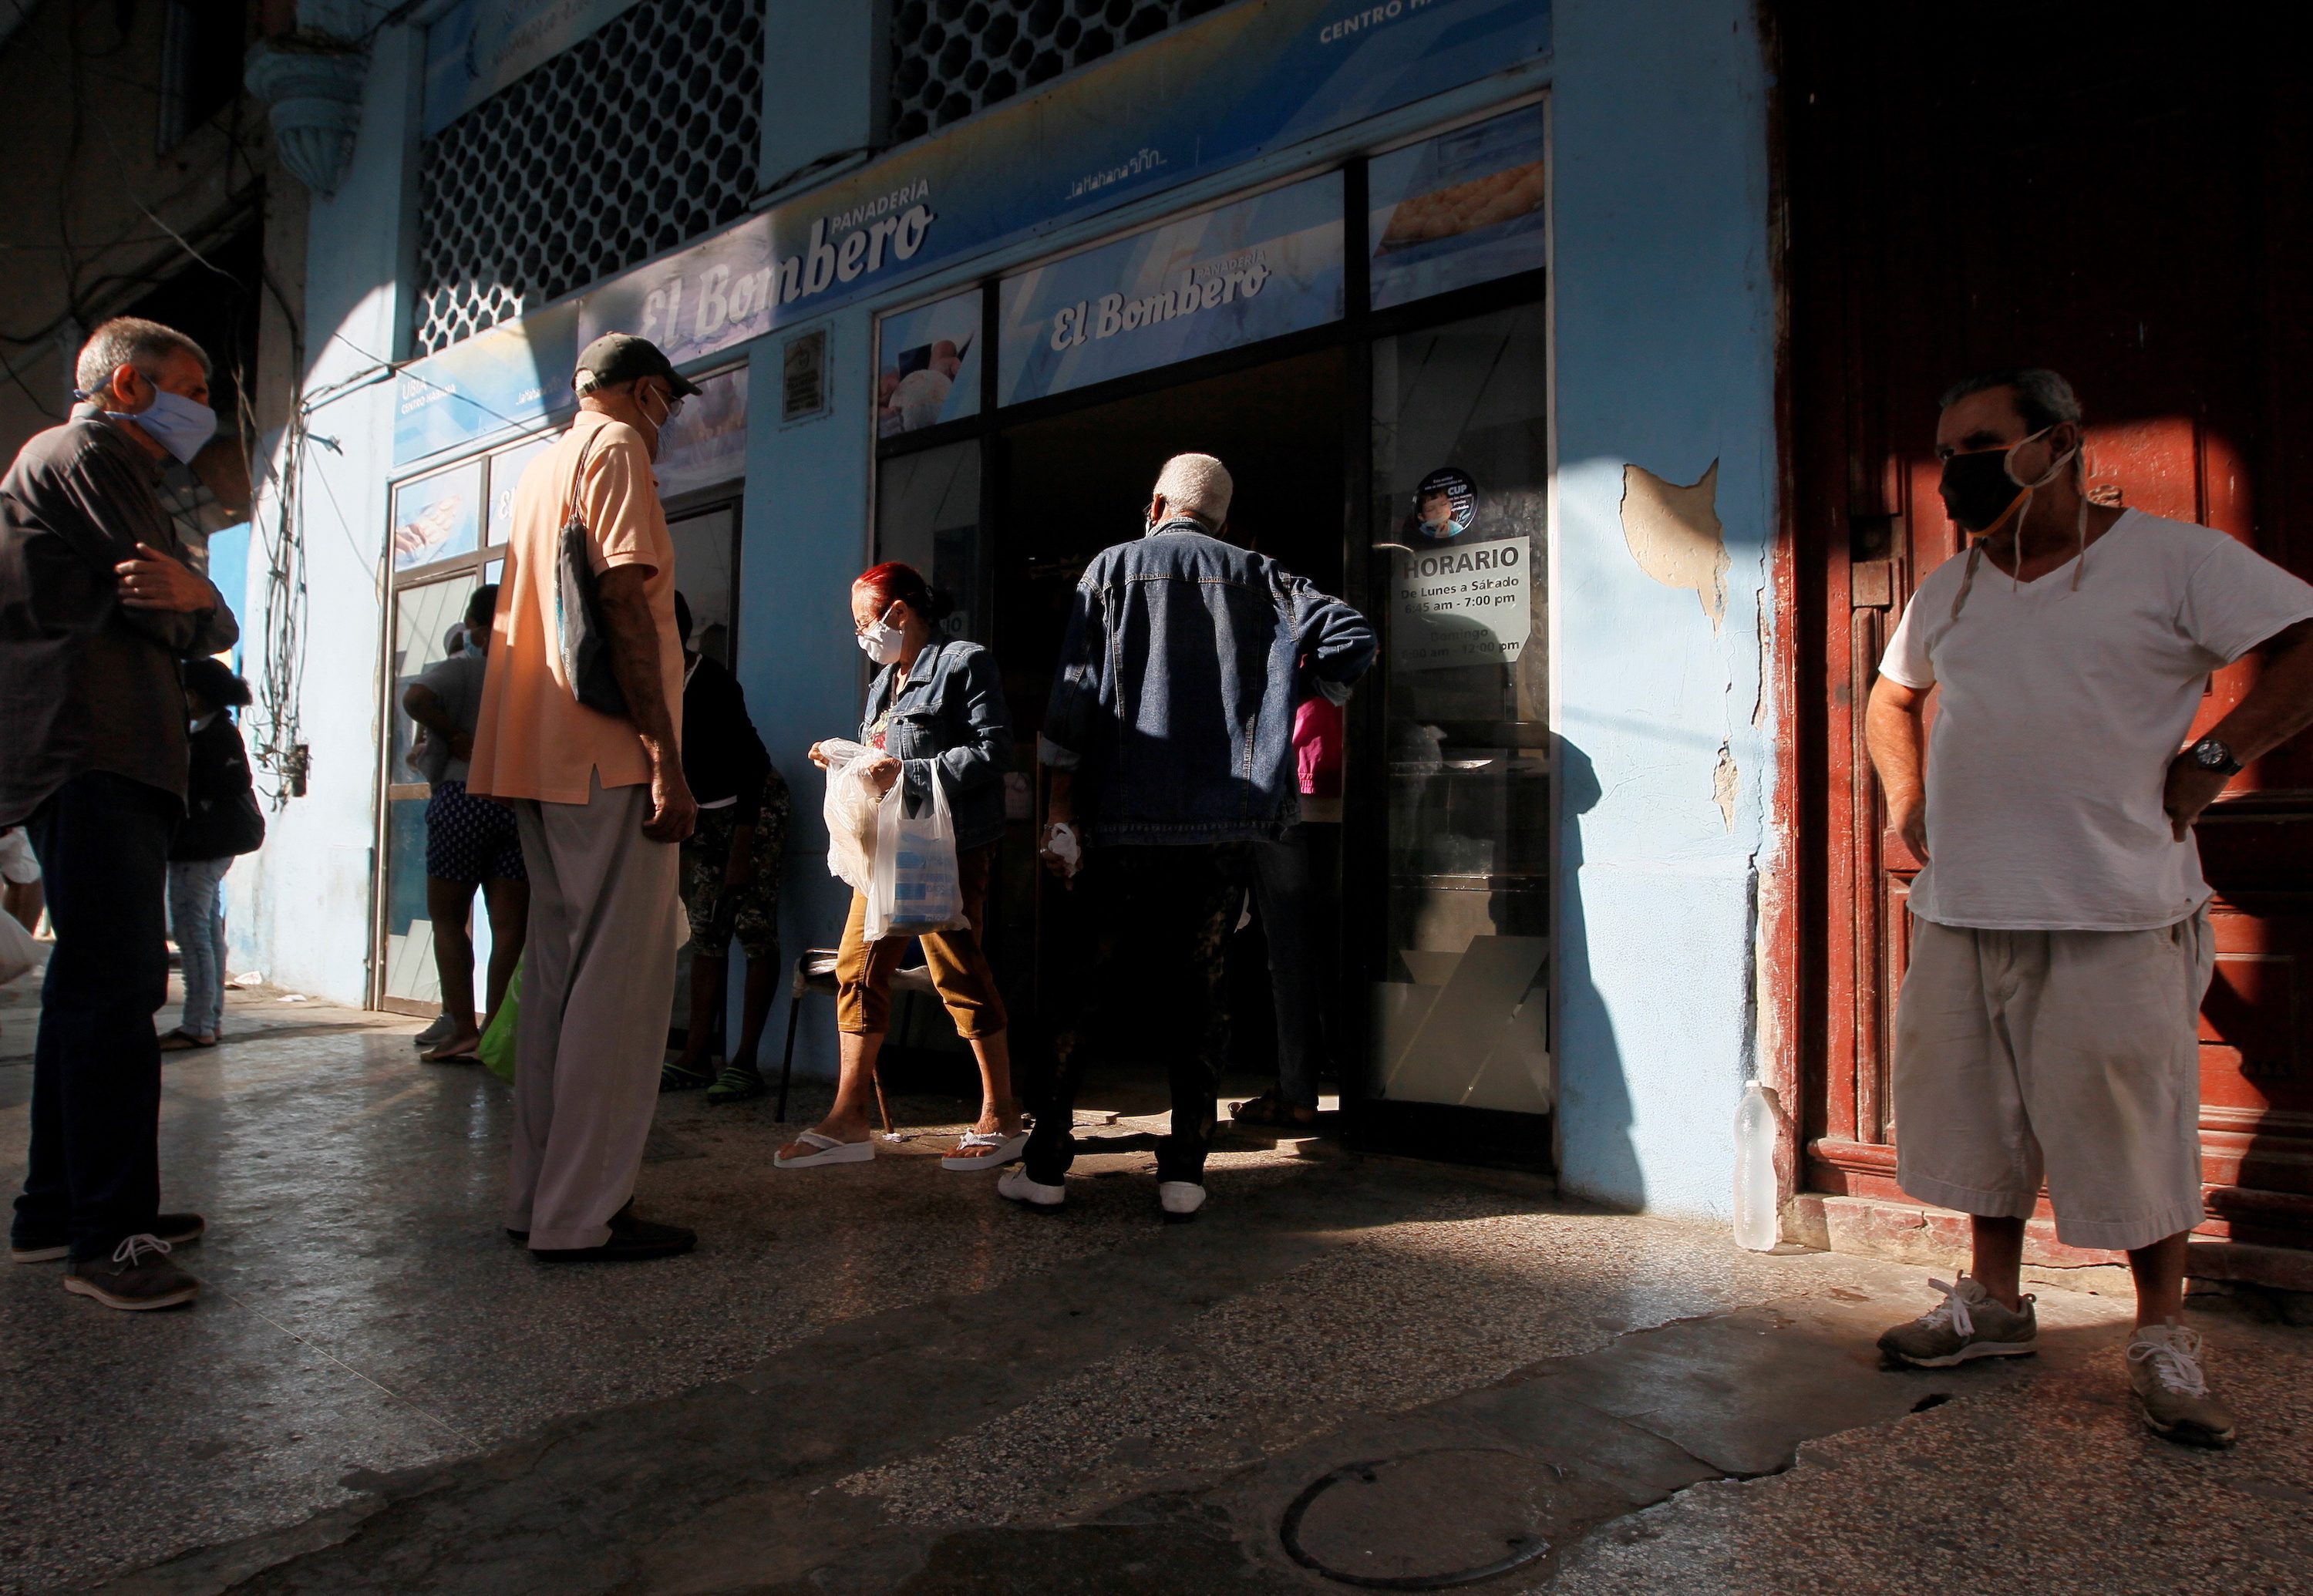 Cuba needs deeper economic reform, creditors say